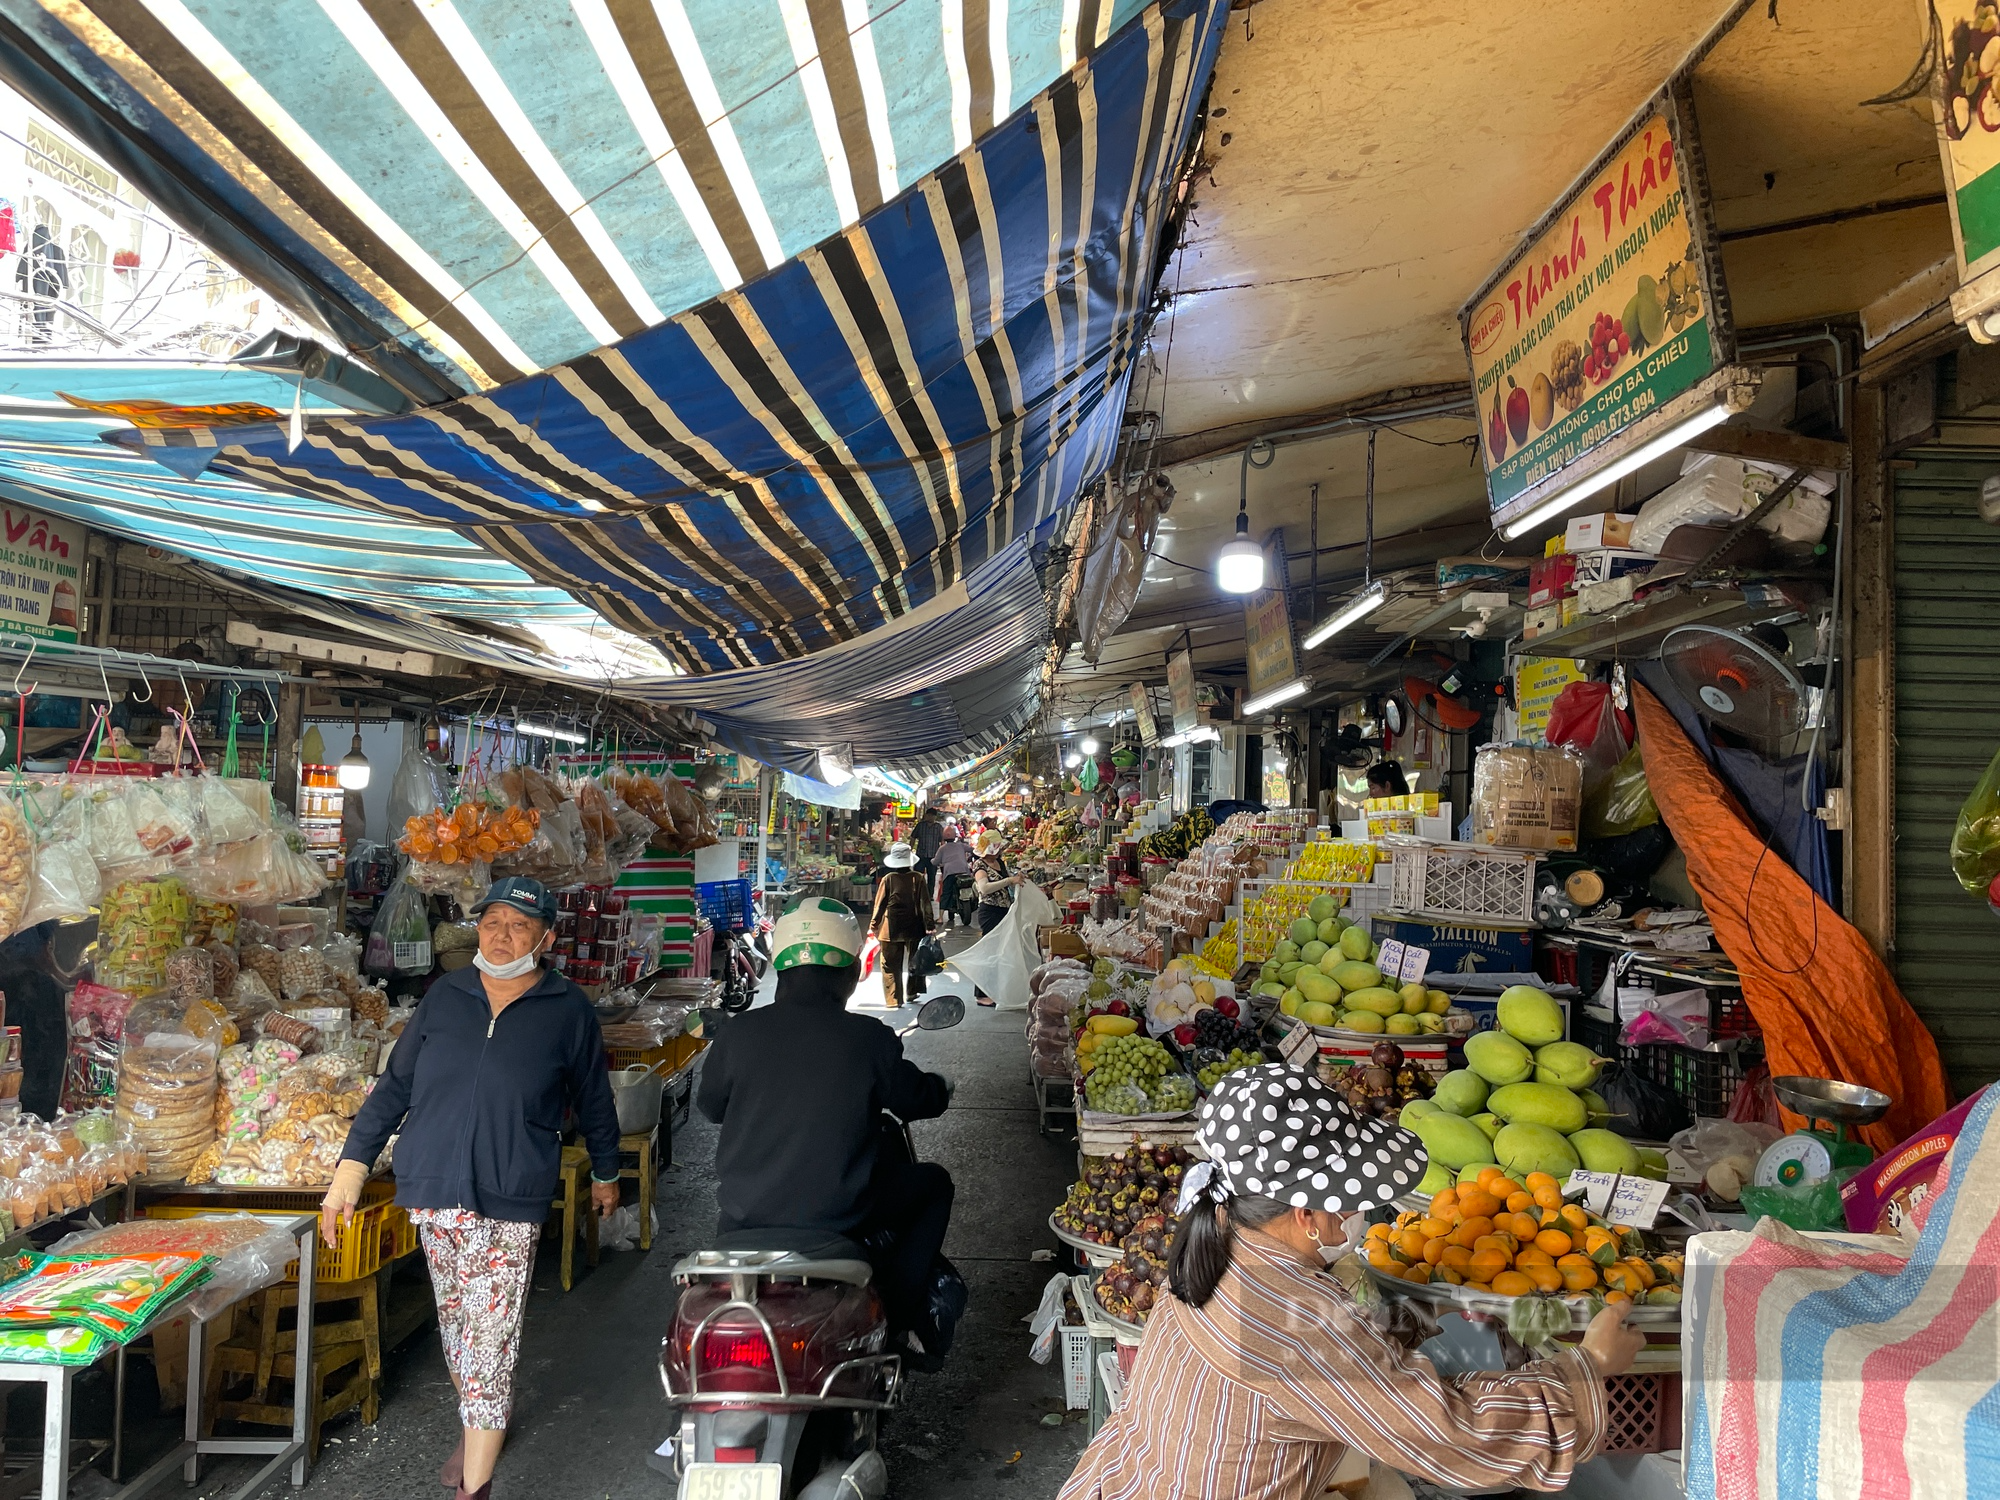 Tiểu thương chợ Sài Gòn xếp hàng dài chờ khách, chiều đóng cửa về sớm vì ế - Ảnh 1.